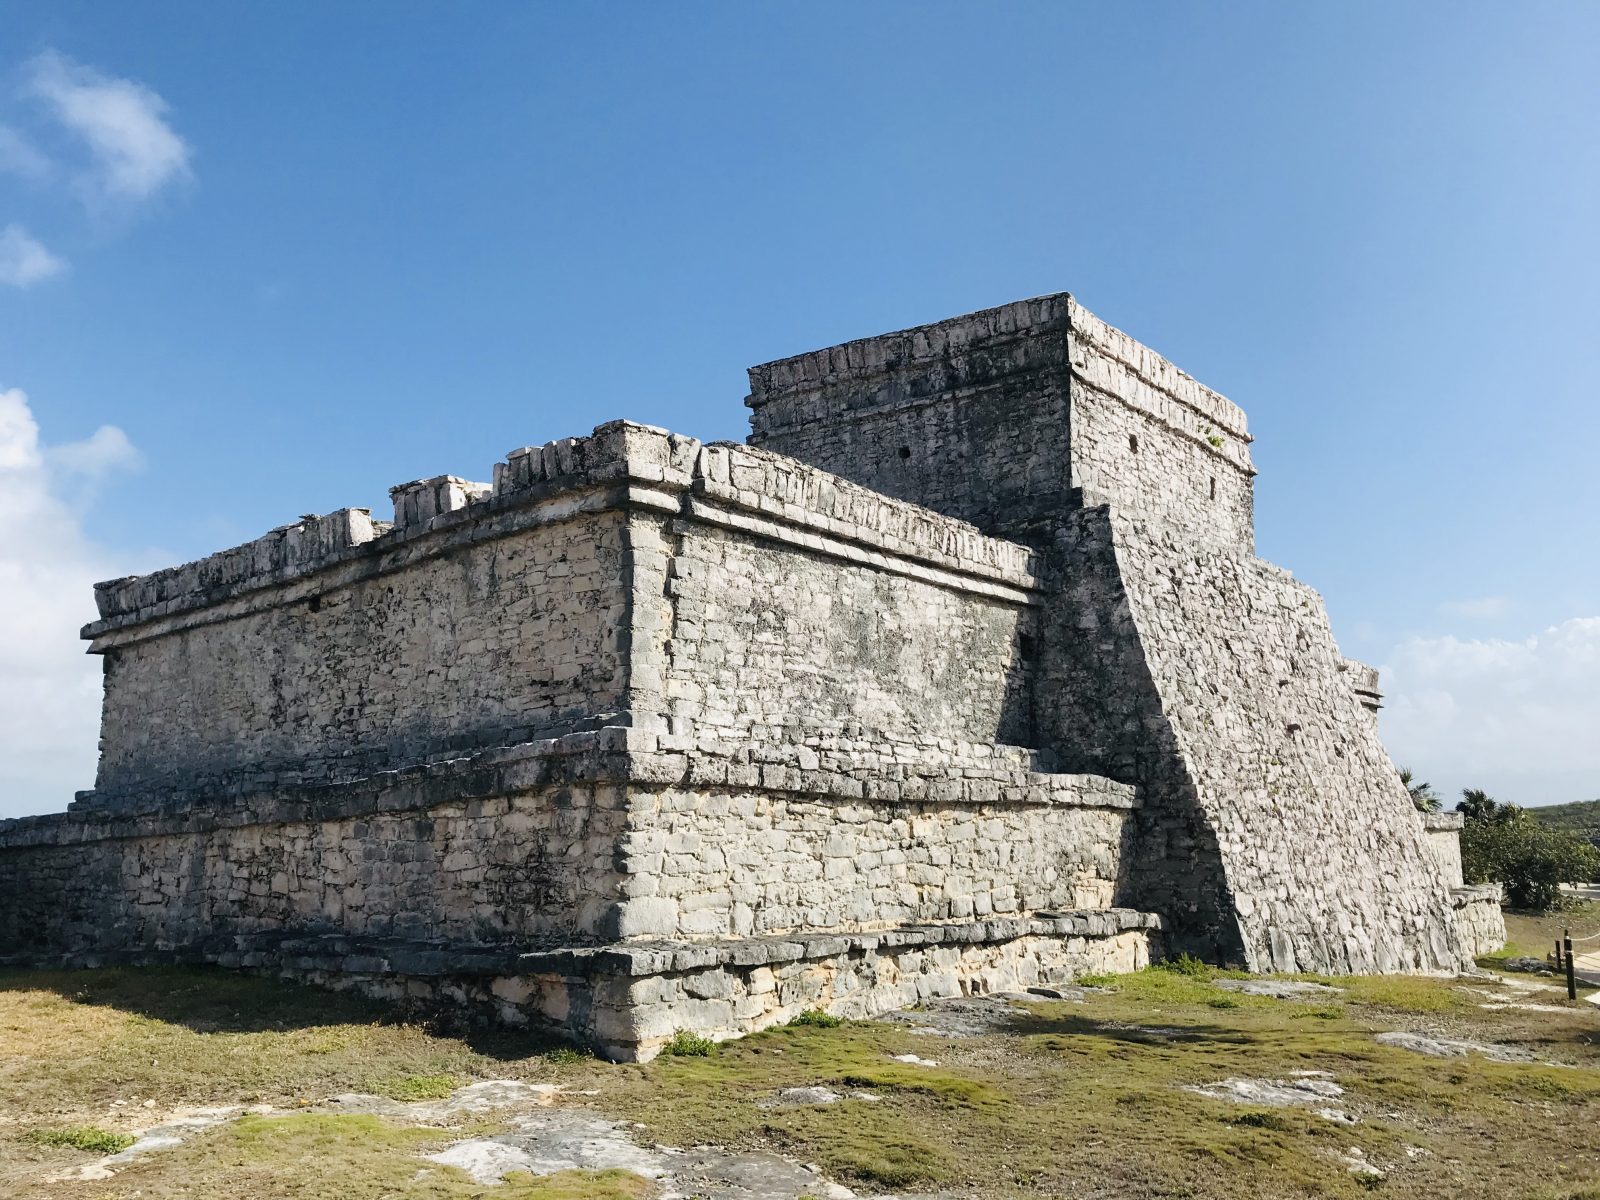 Exploring the Mayan ruins of Tulum